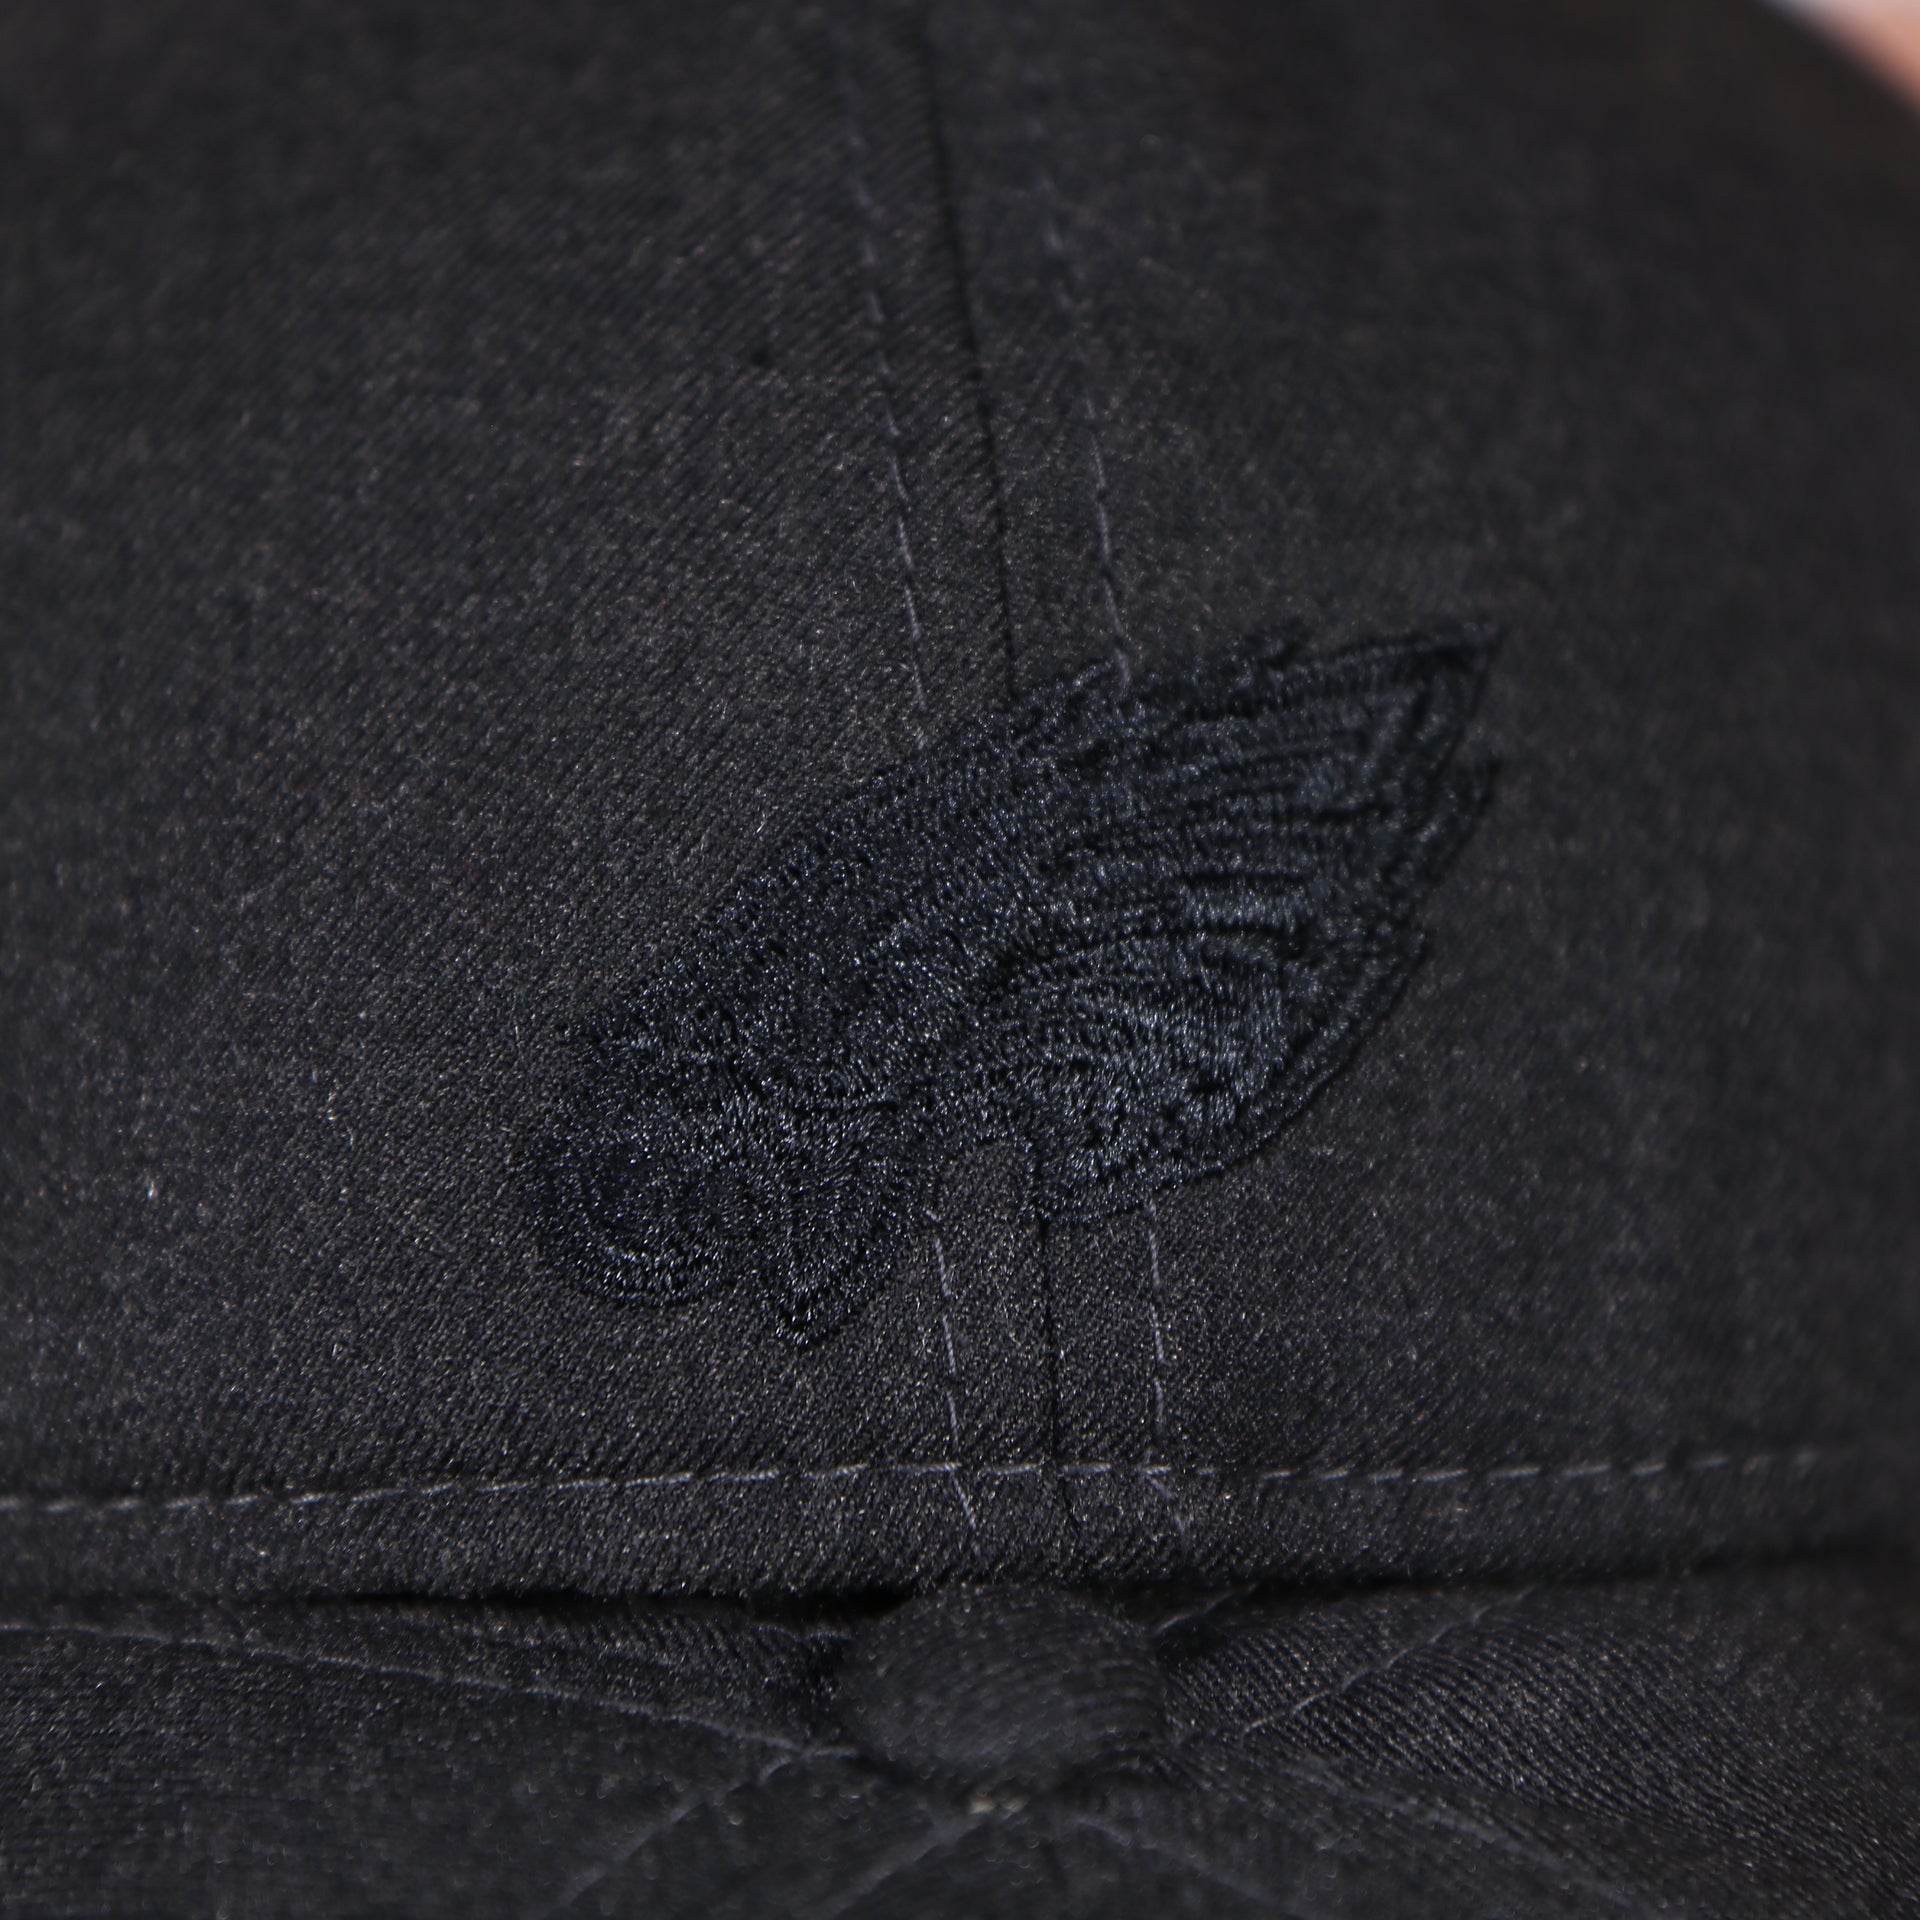 Eagles logo on the backside of the Philadelphia Eagles Jeff Cap Black Duckbill Hat | OSFM